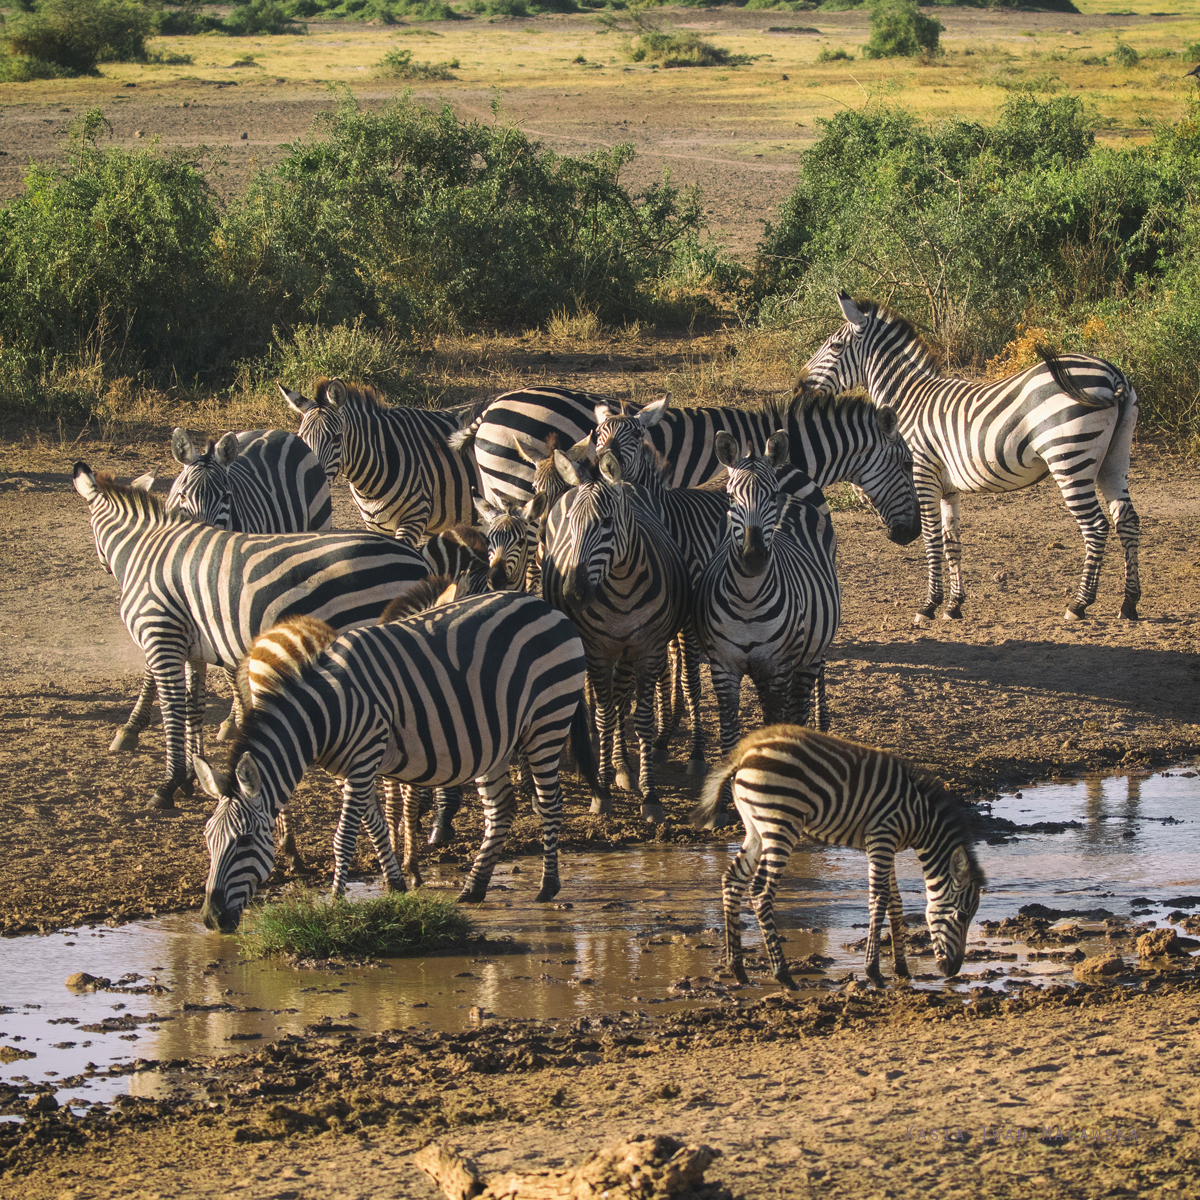 Zebra, stepowa, Equus, quagga, Afryka, Kenia, ssaki